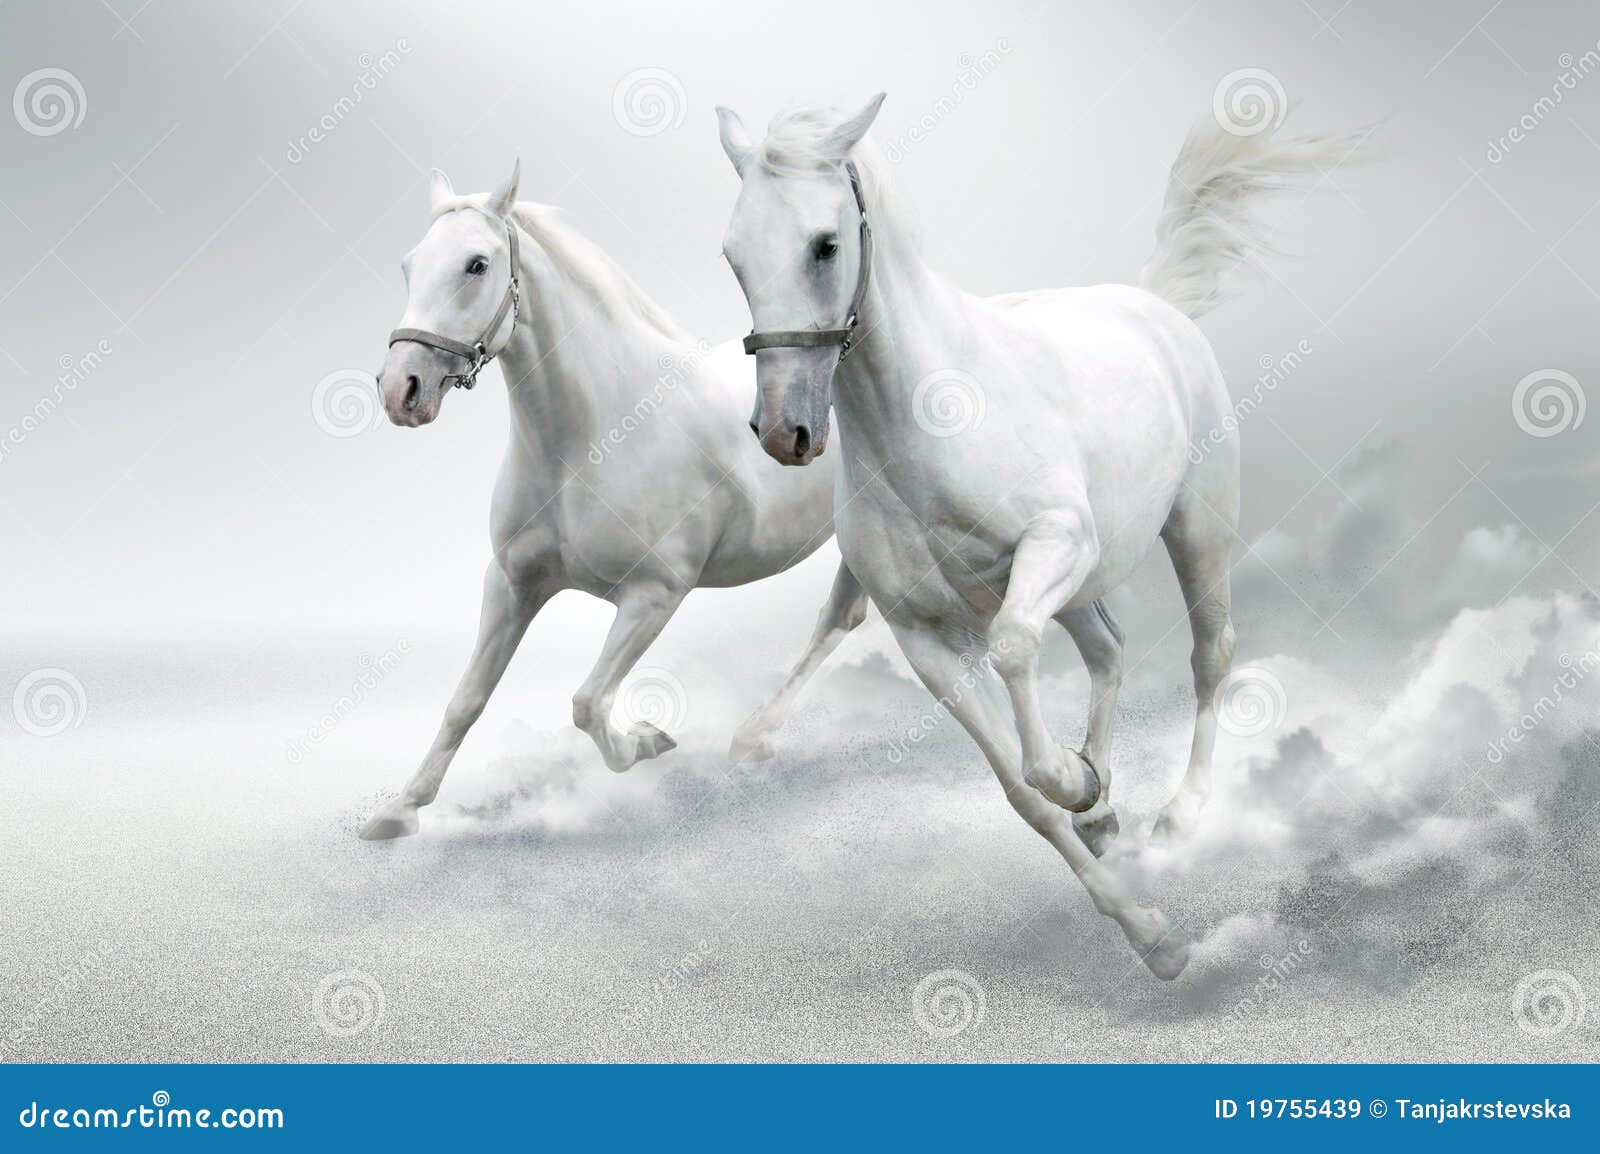 White horses stock image. Image of fast, mane, grey, freedom ...